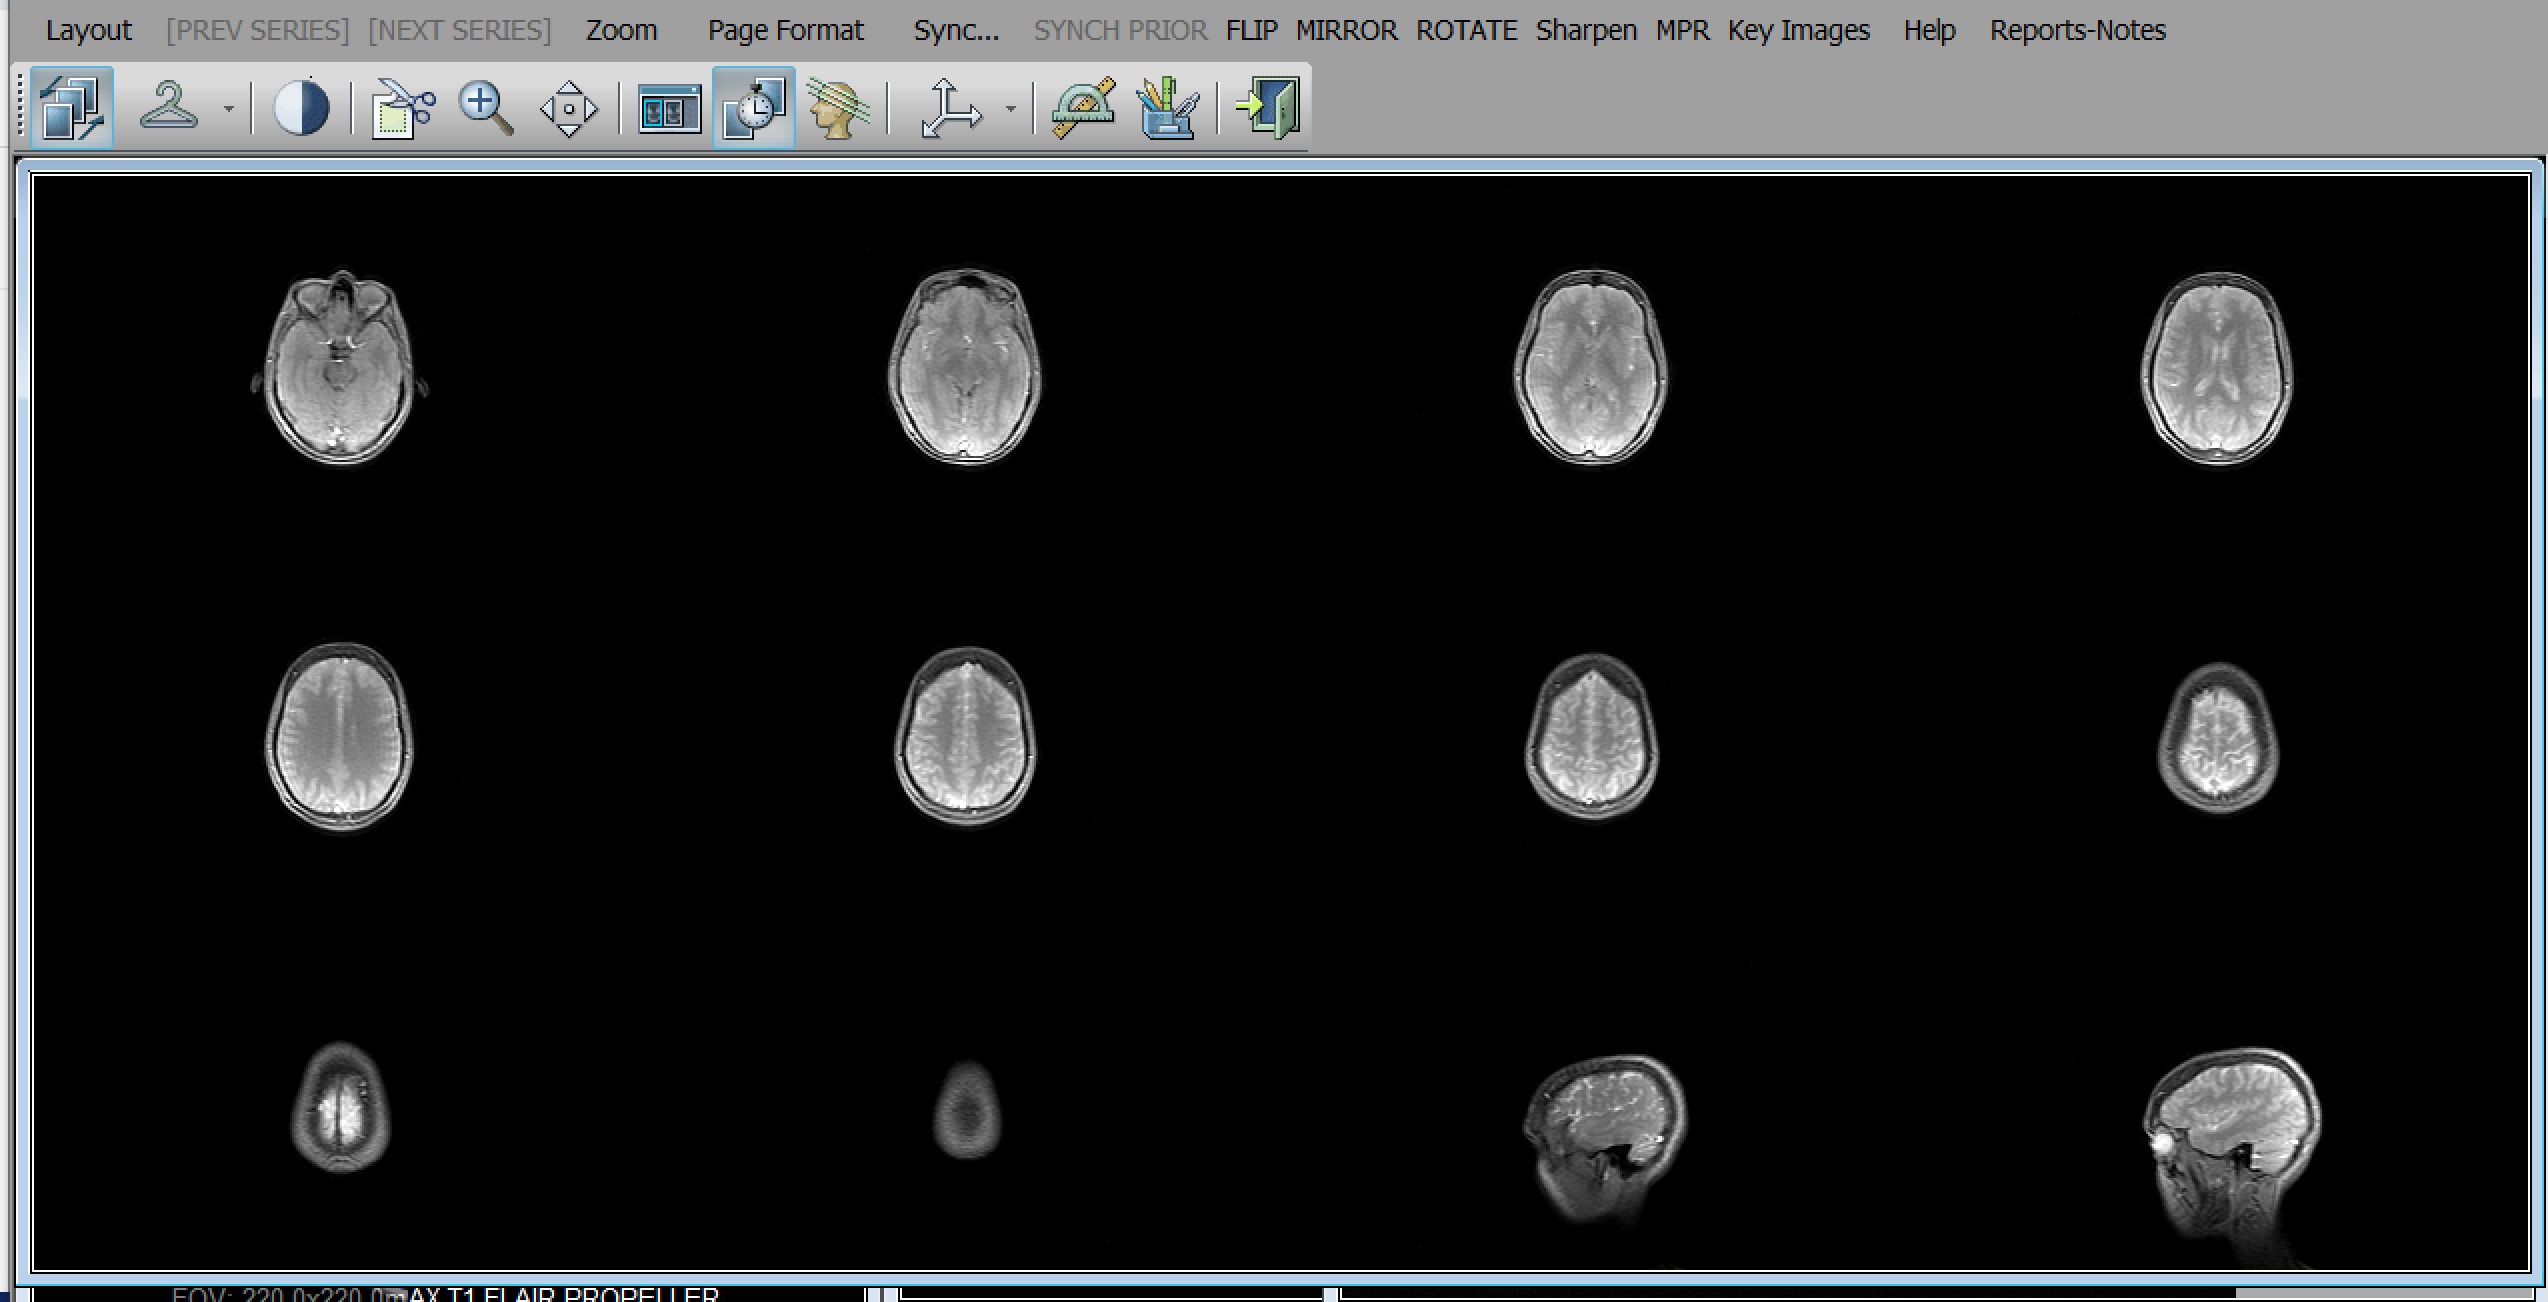 4x3 layout of brain MRI scans.